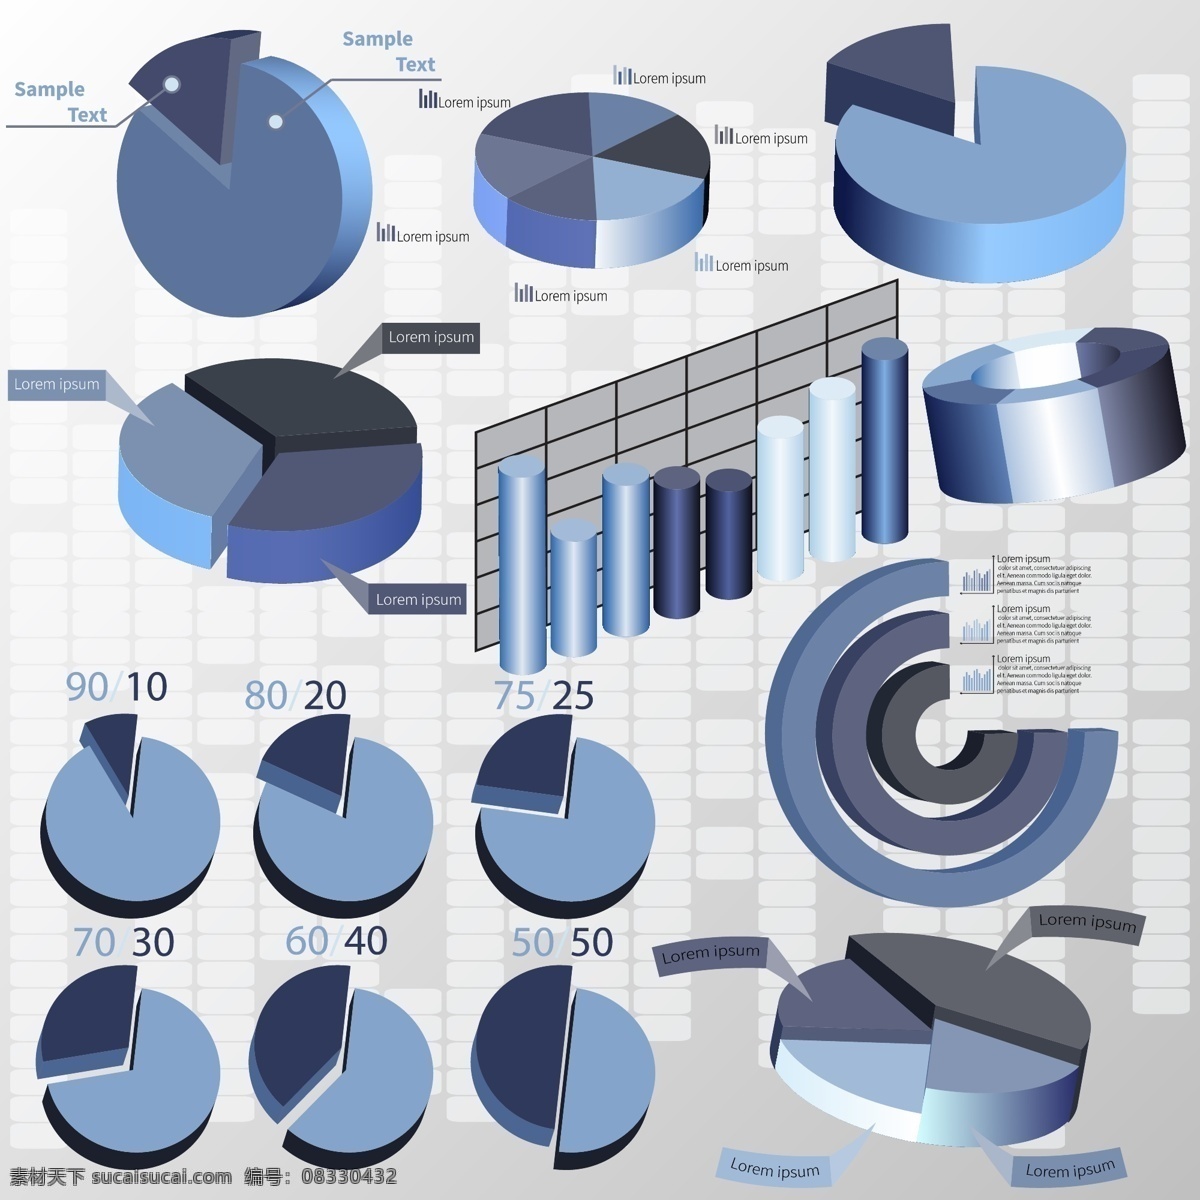 商务 统计 图表 时尚商务 统计图表 矢量素材 格式 psd素材 矢量 高清图片